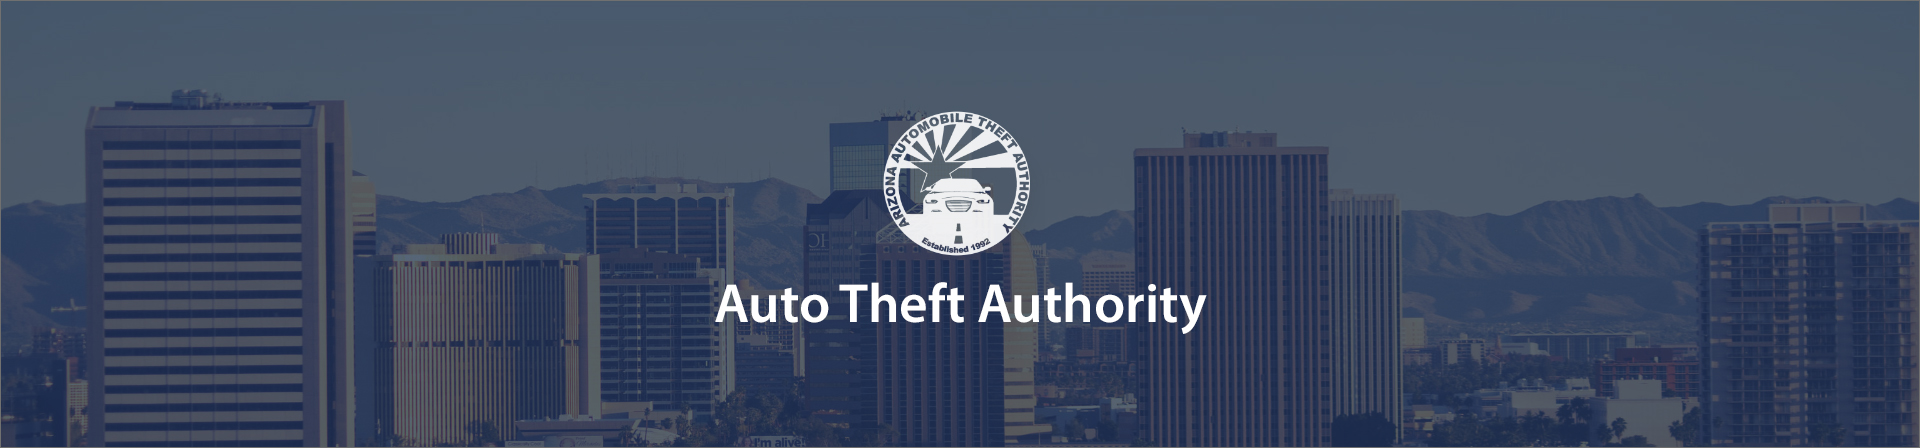 Auto theft authority banner